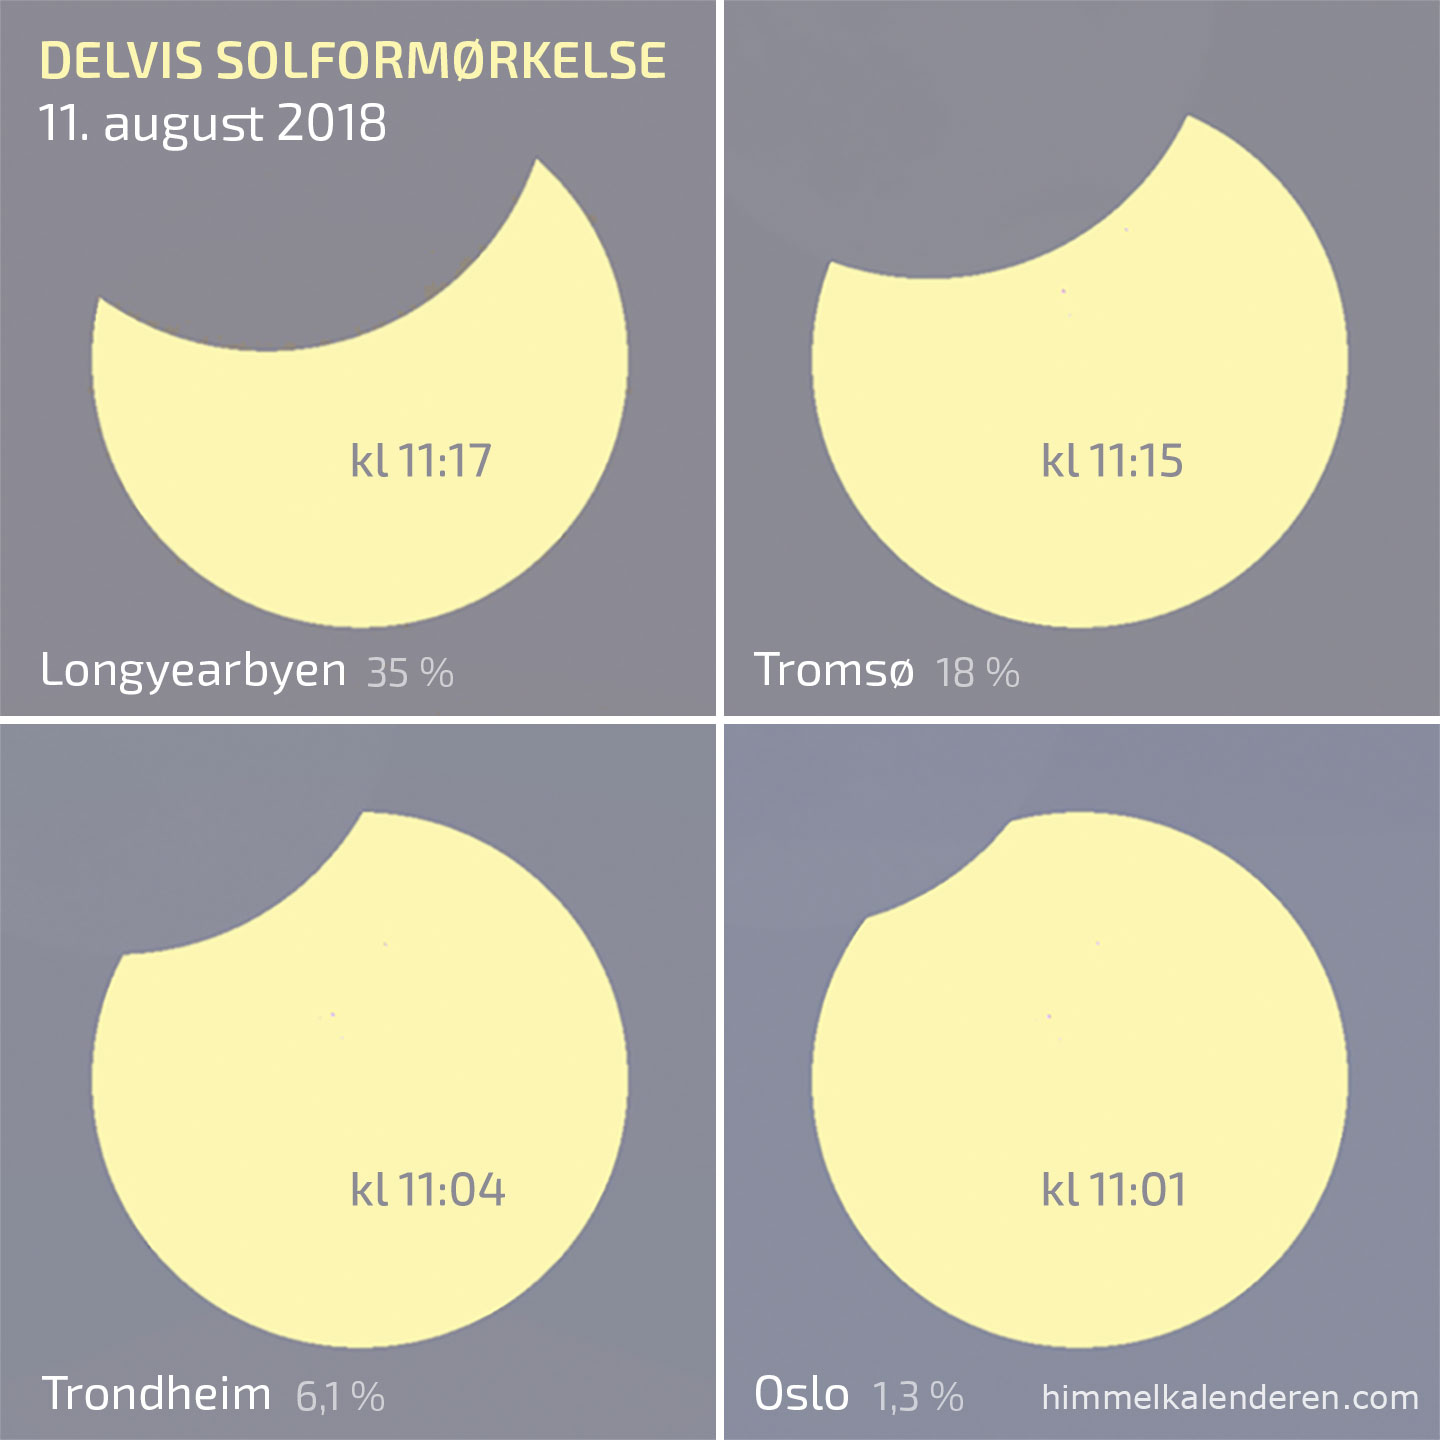 Delvis solformørkelse 11. august 2018 i Norge